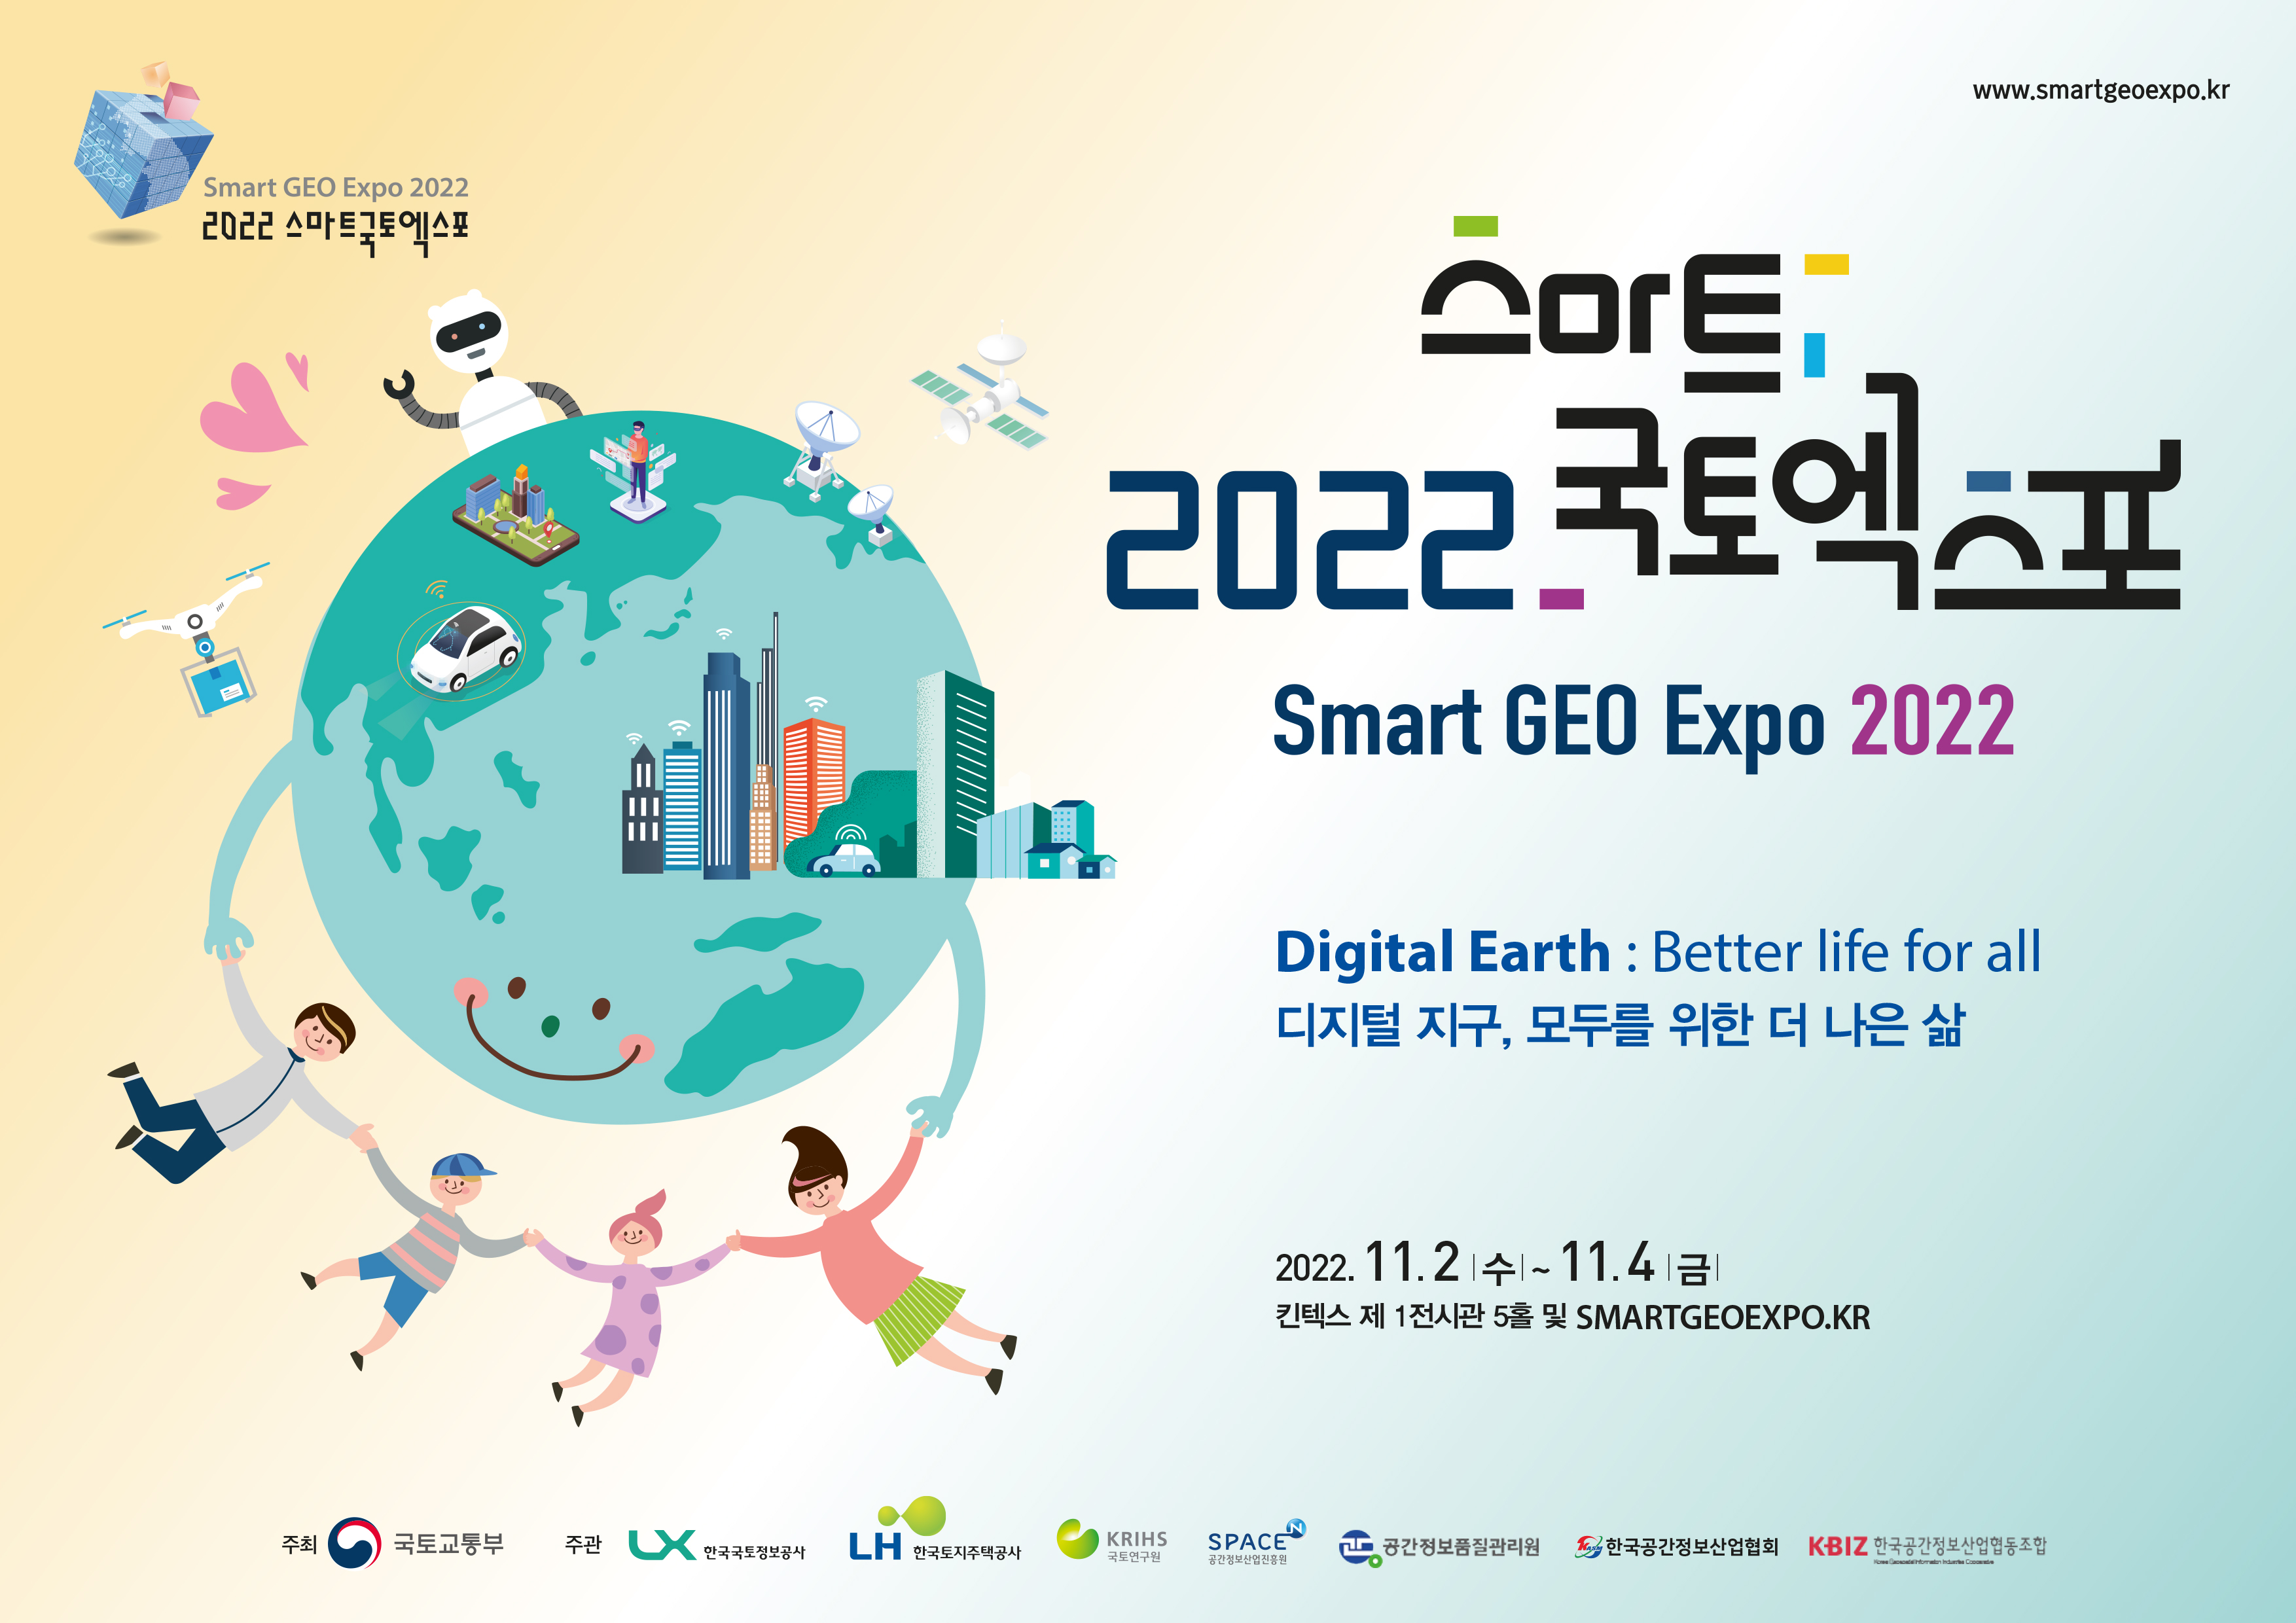 스마트 2022 국토엑스포
smart GEO Expo 2022

Digital Earth : Better life for all
디지털 지구, 모두를 위한 더 나은 삶

2022.11.2.(수) ~ 11.4.(금)

킨텍스 제1전시관 5홀 및 SMARTGEOEXPO.KR